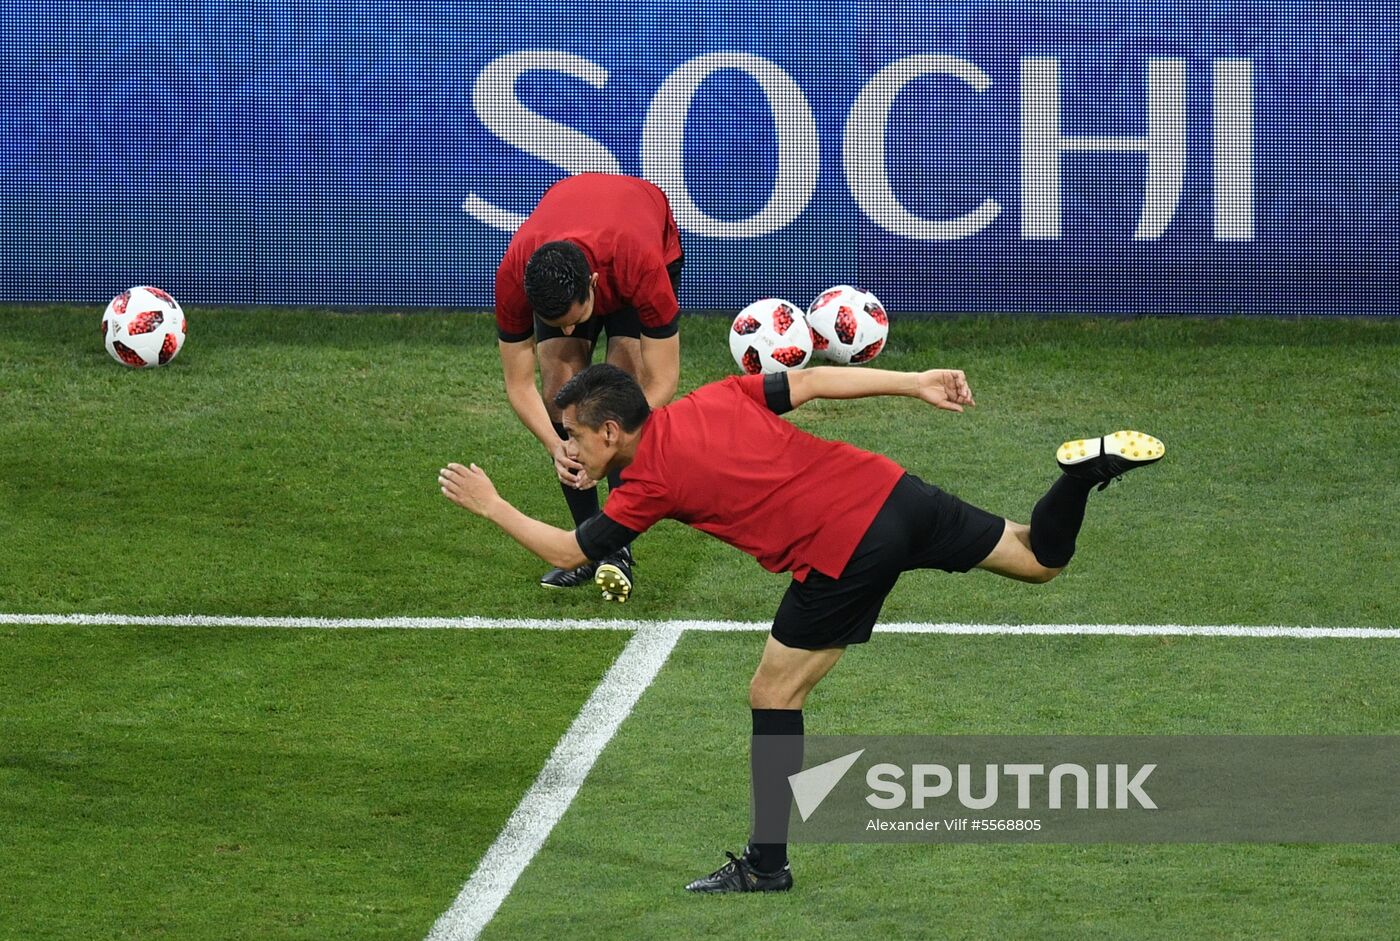 Russia World Cup Uruguay - Portugal